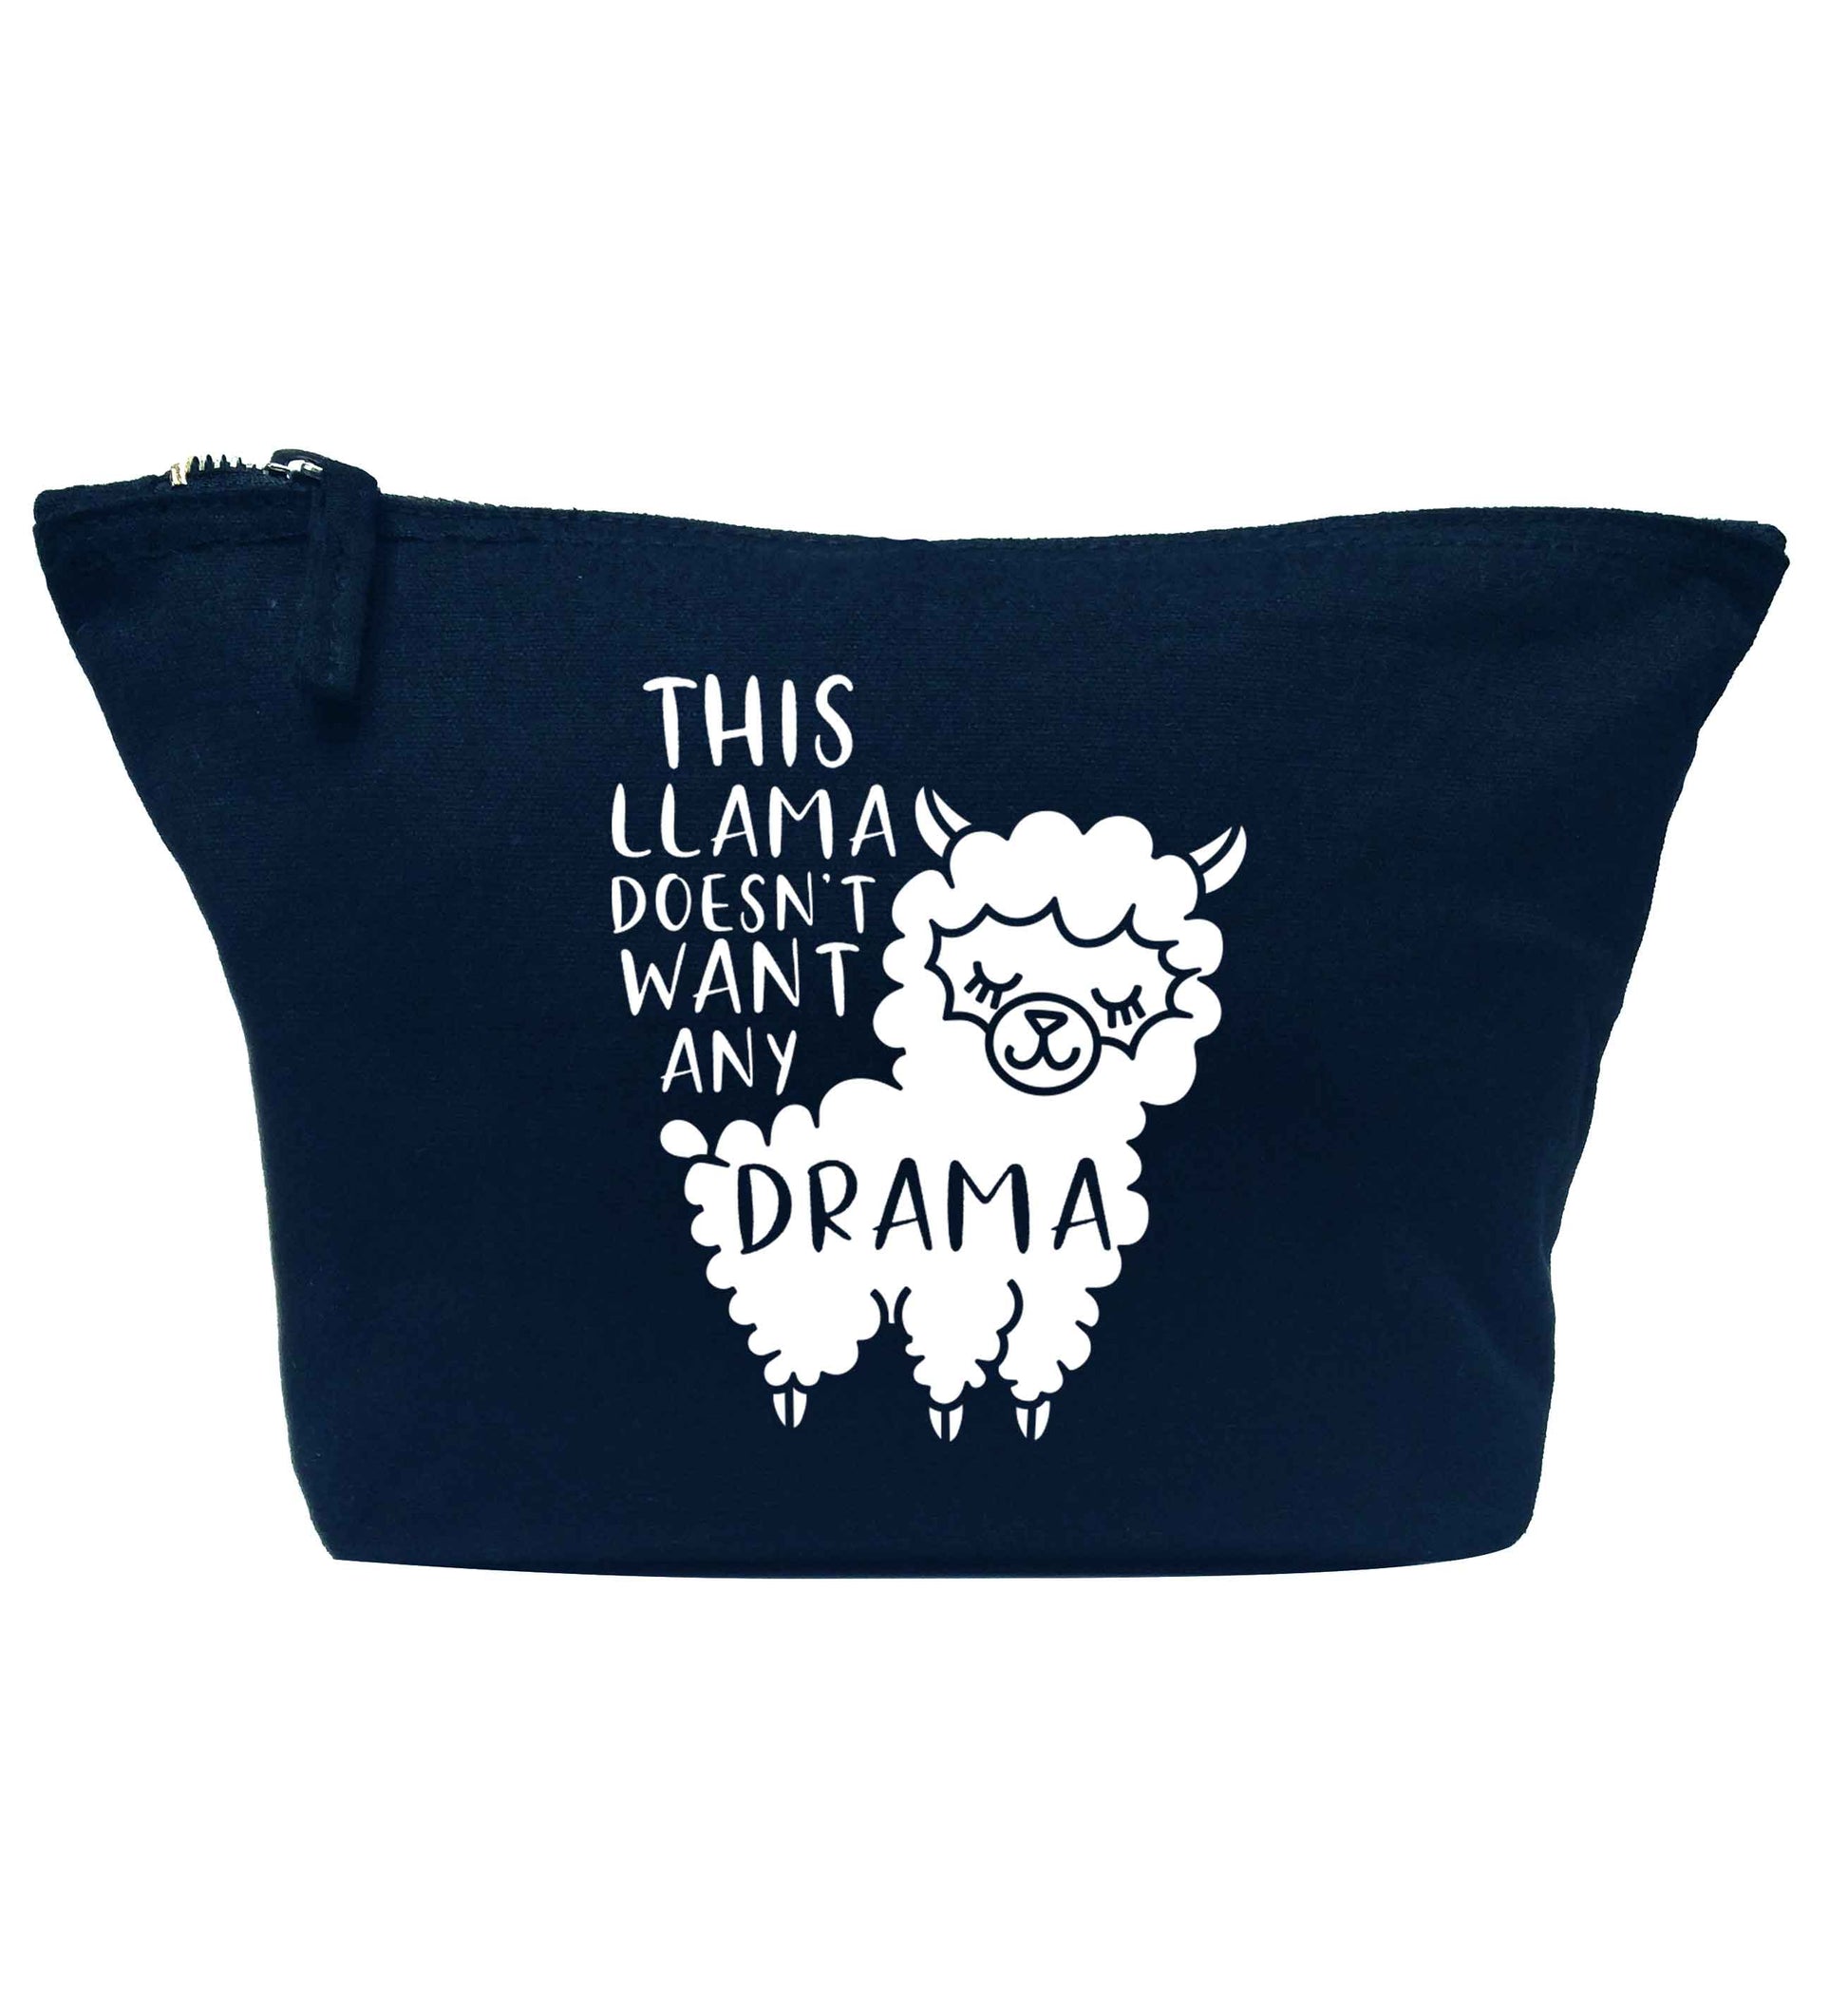 This Llama doesn't want any drama navy makeup bag